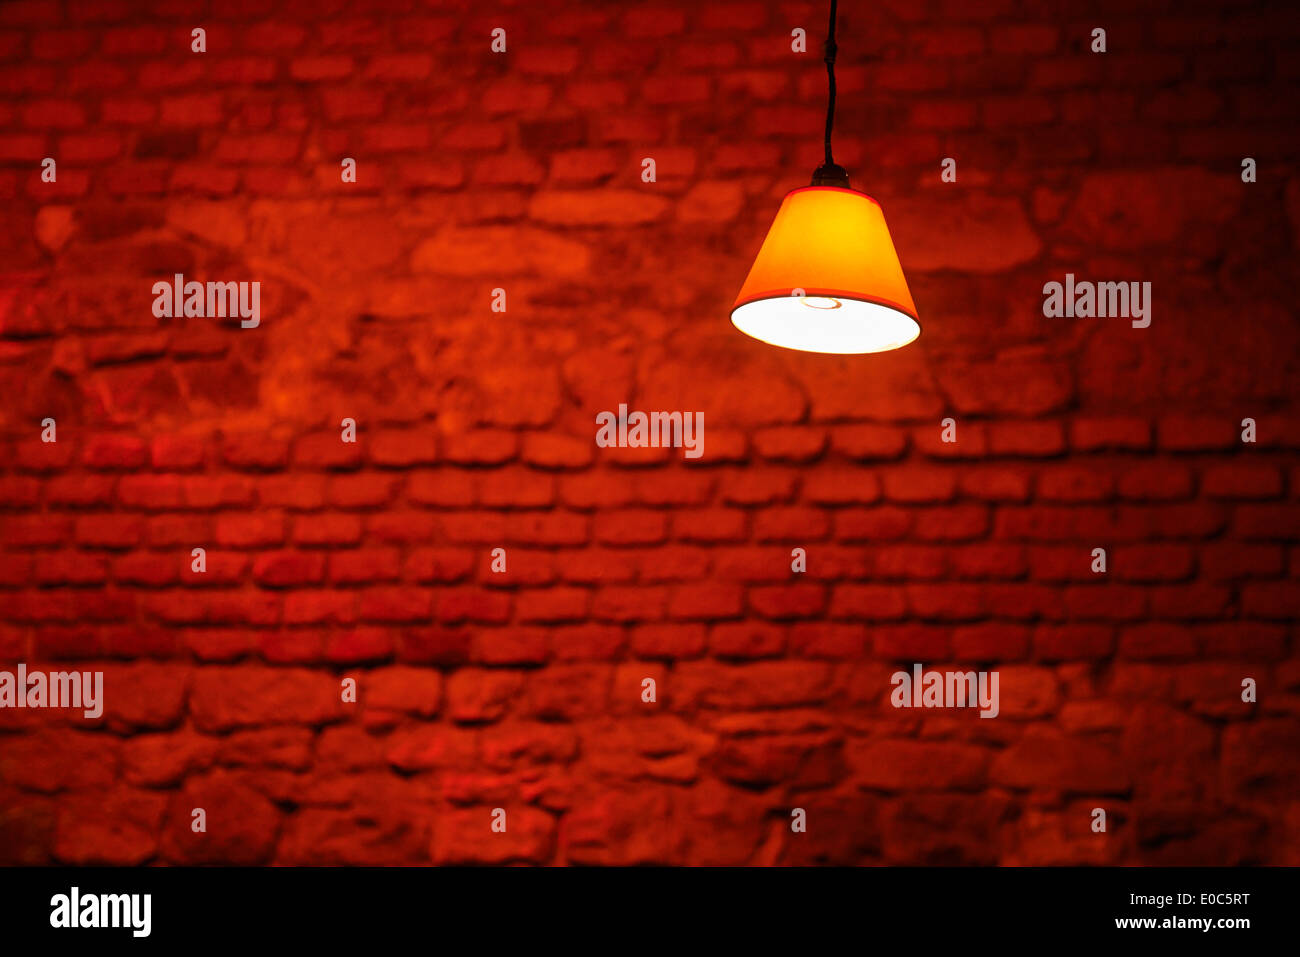 Beleuchtung Lampe mit rotem Backstein-Mauer-Hintergrund Stockfotografie -  Alamy